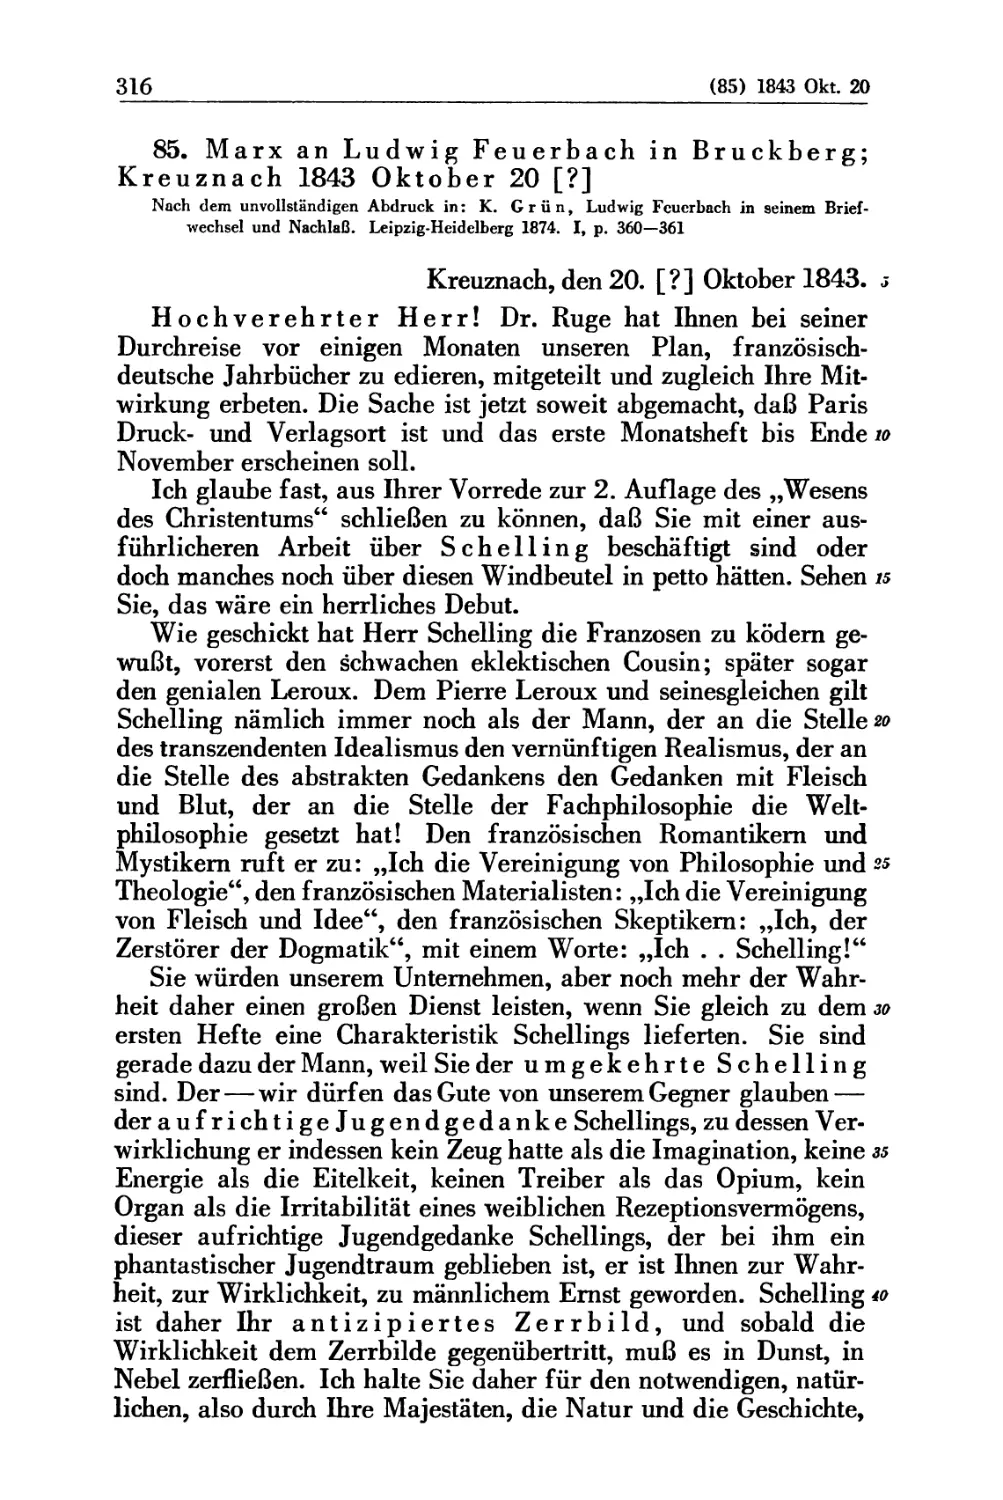 85. Marx an Ludwig Feuerbach in Bruckberg; Kreuznach 1843 Oktober 20 [?]